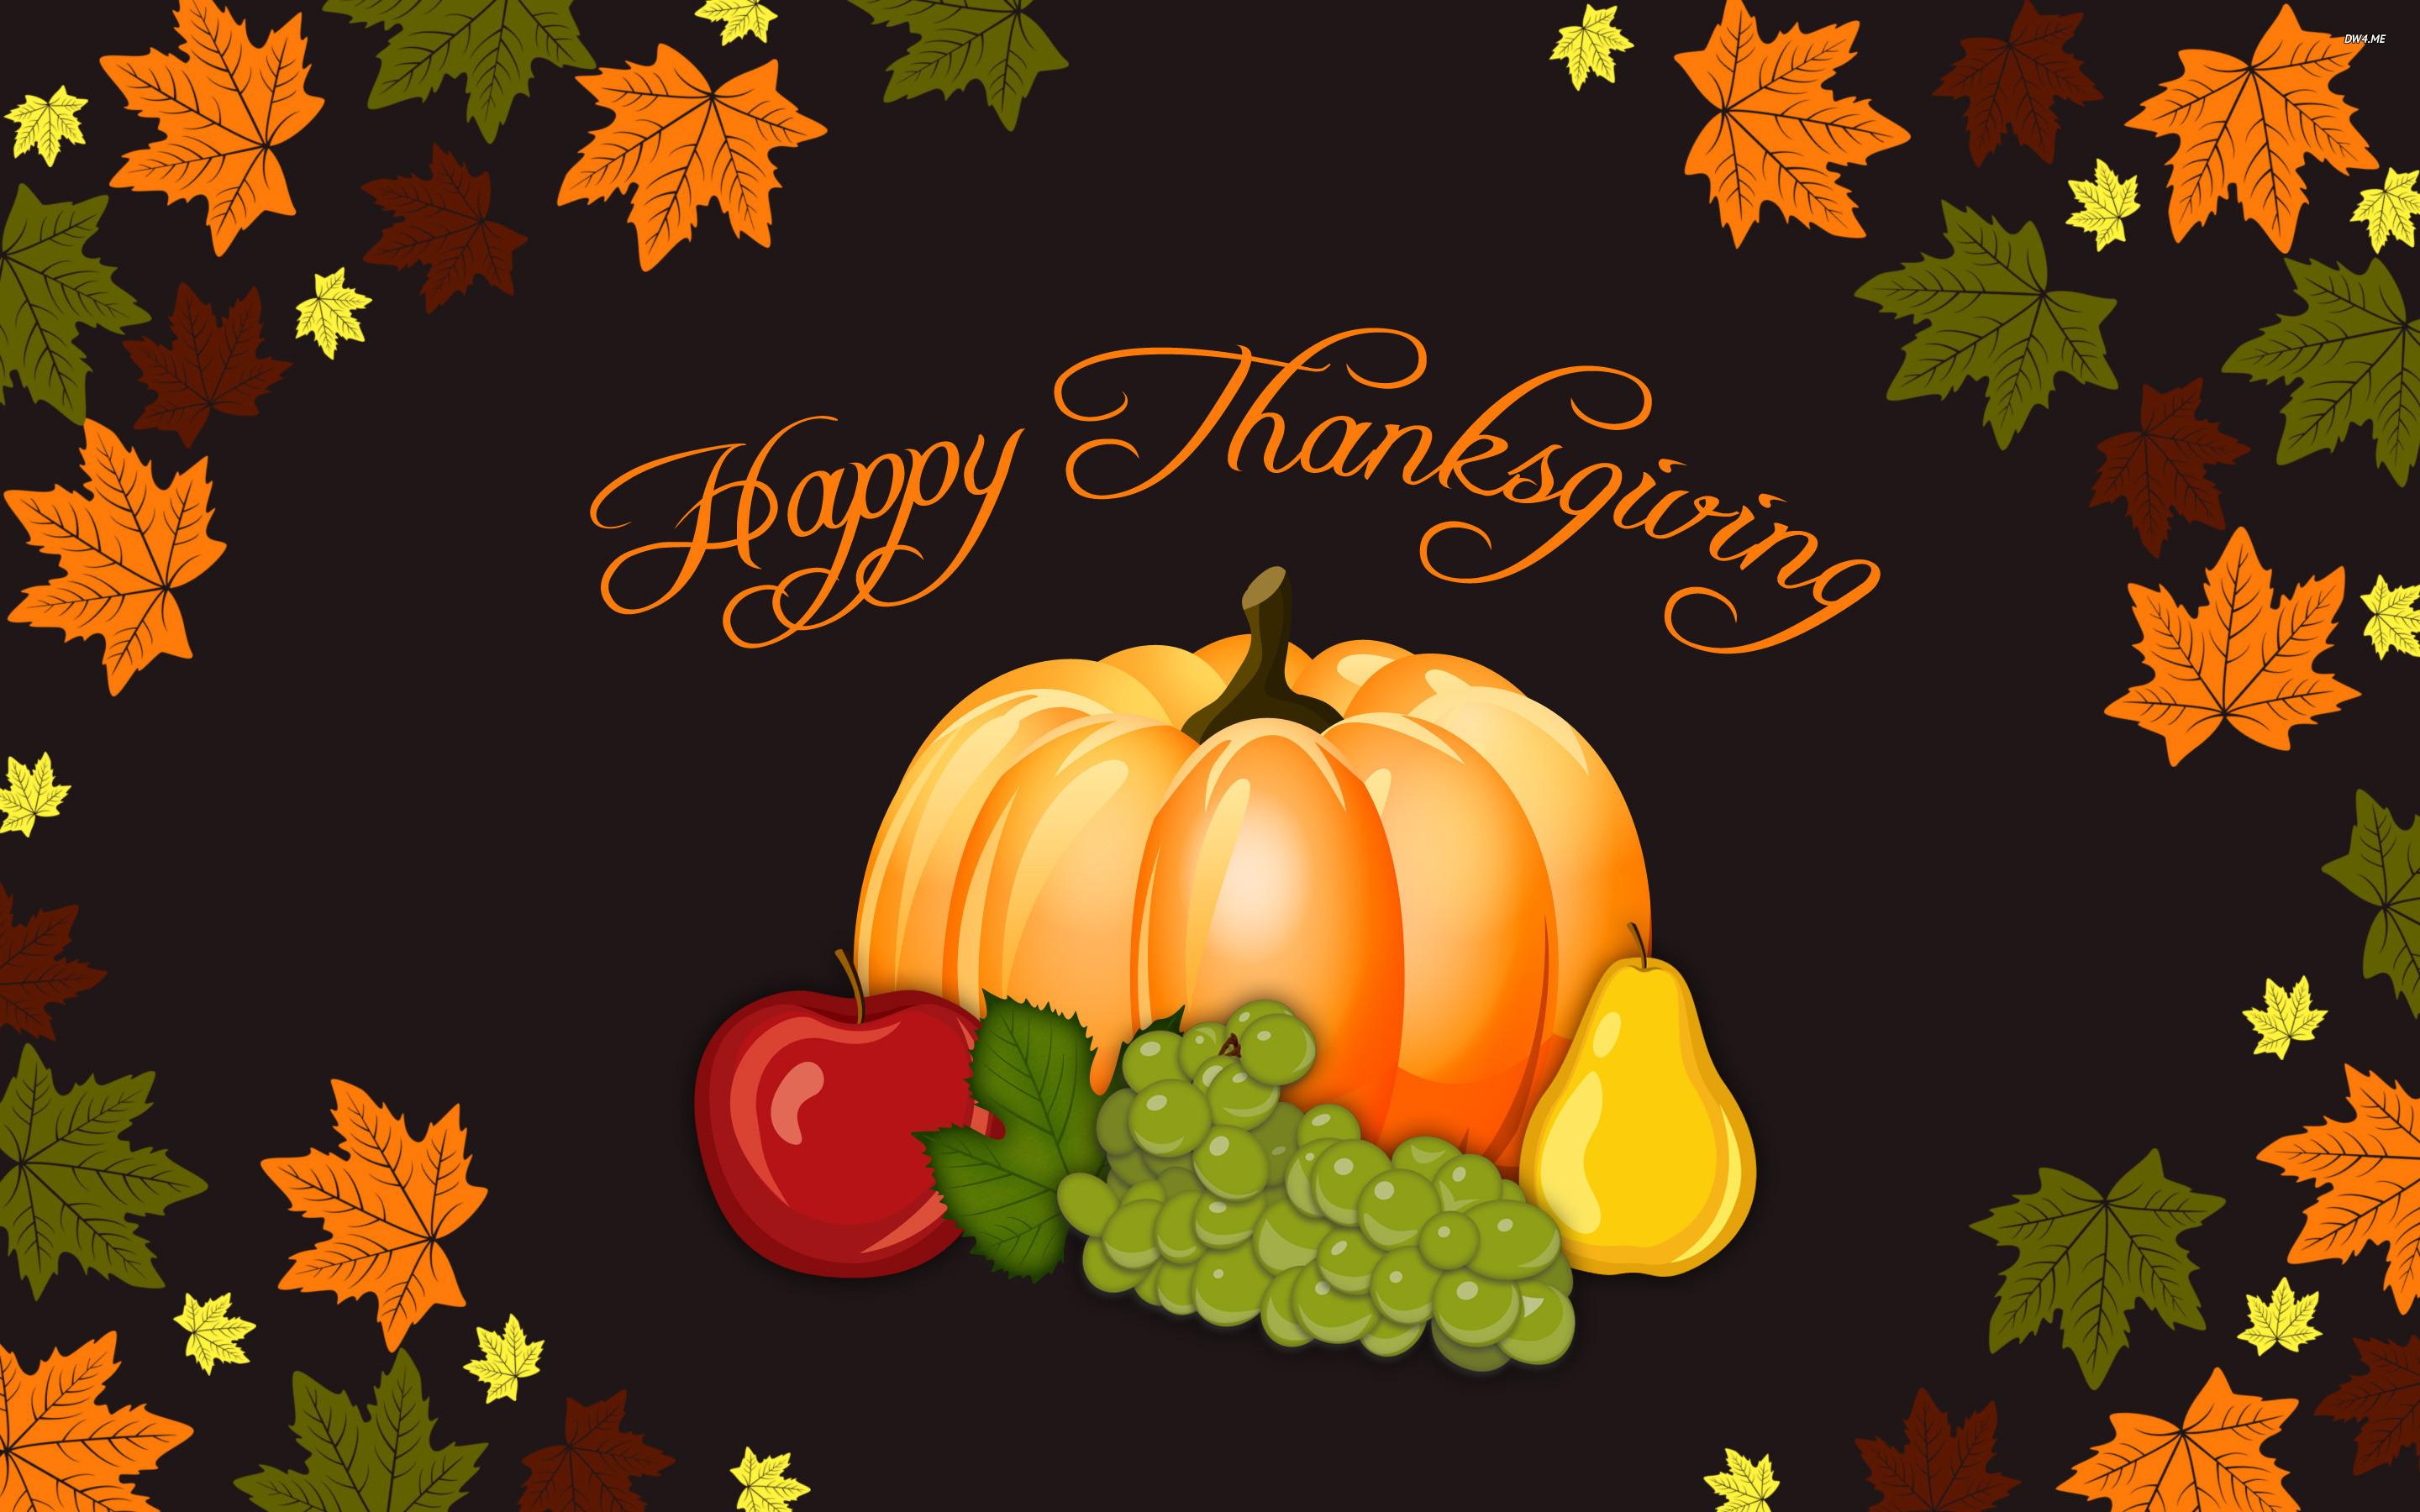 Thanksgiving Image Wallpaper